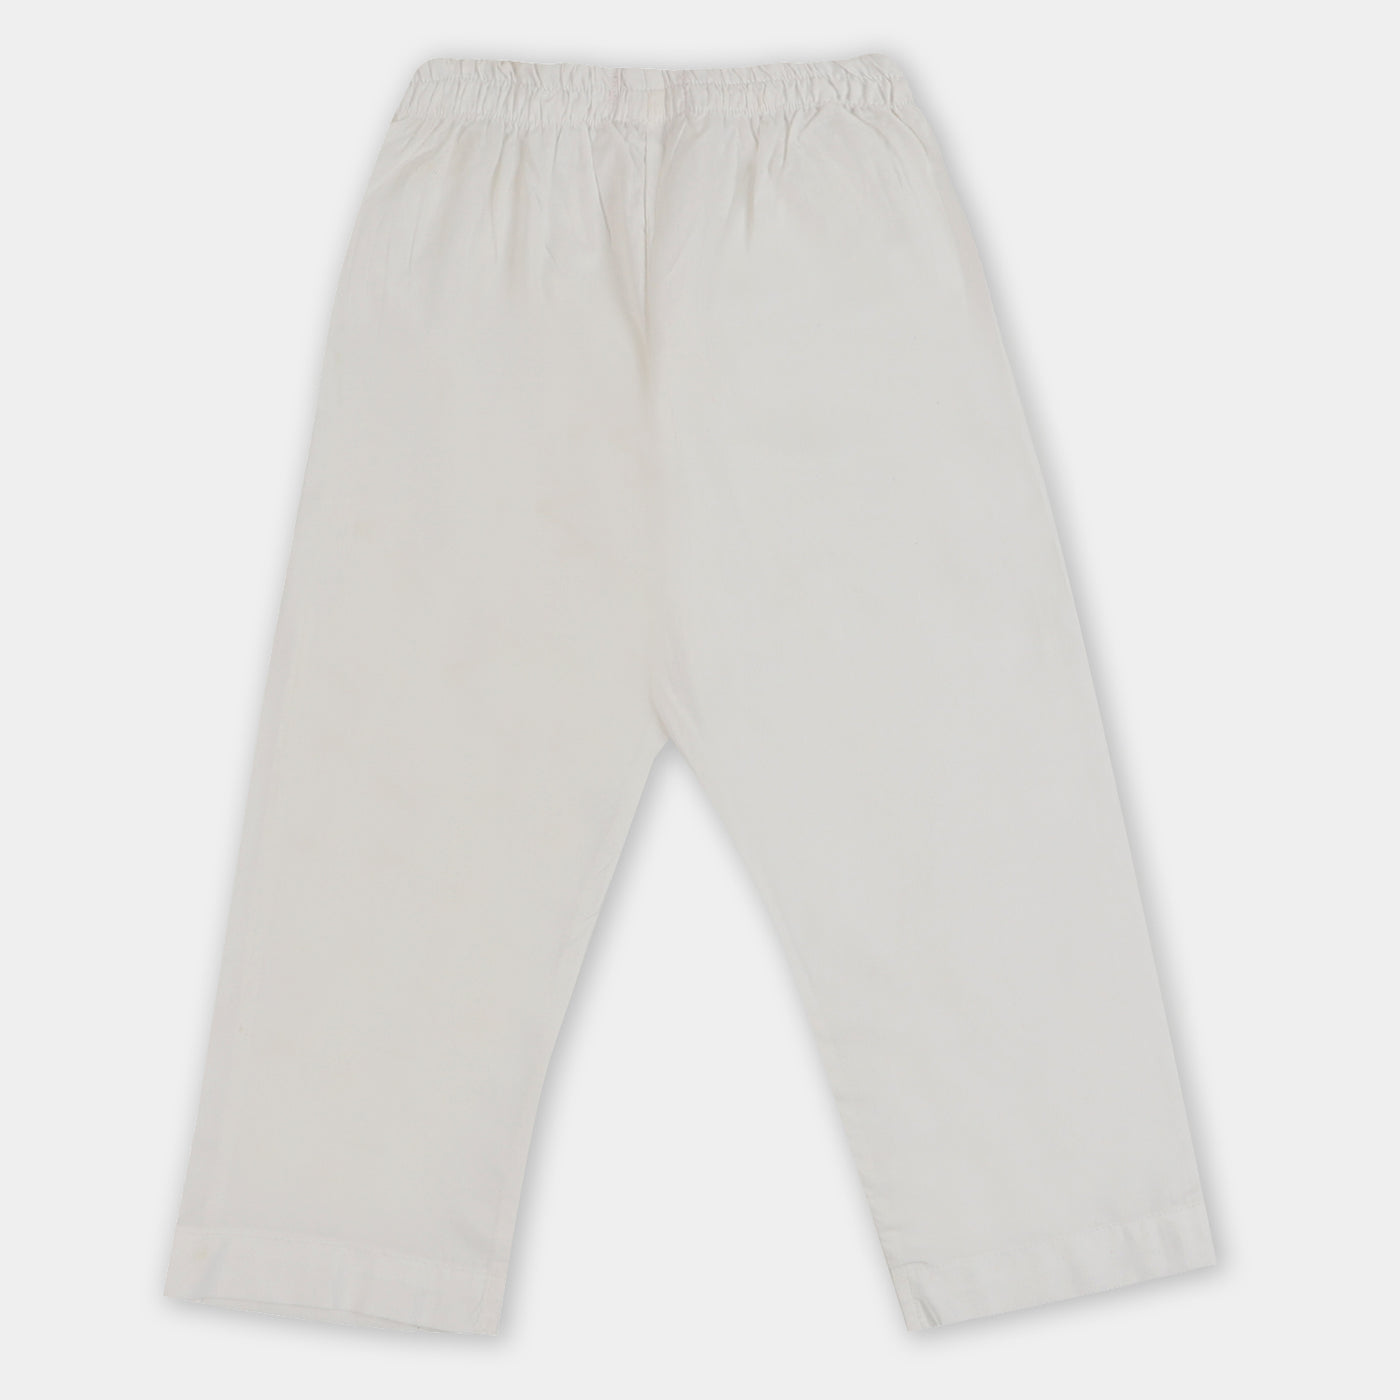 Boys Eastern Basic Pajama- White